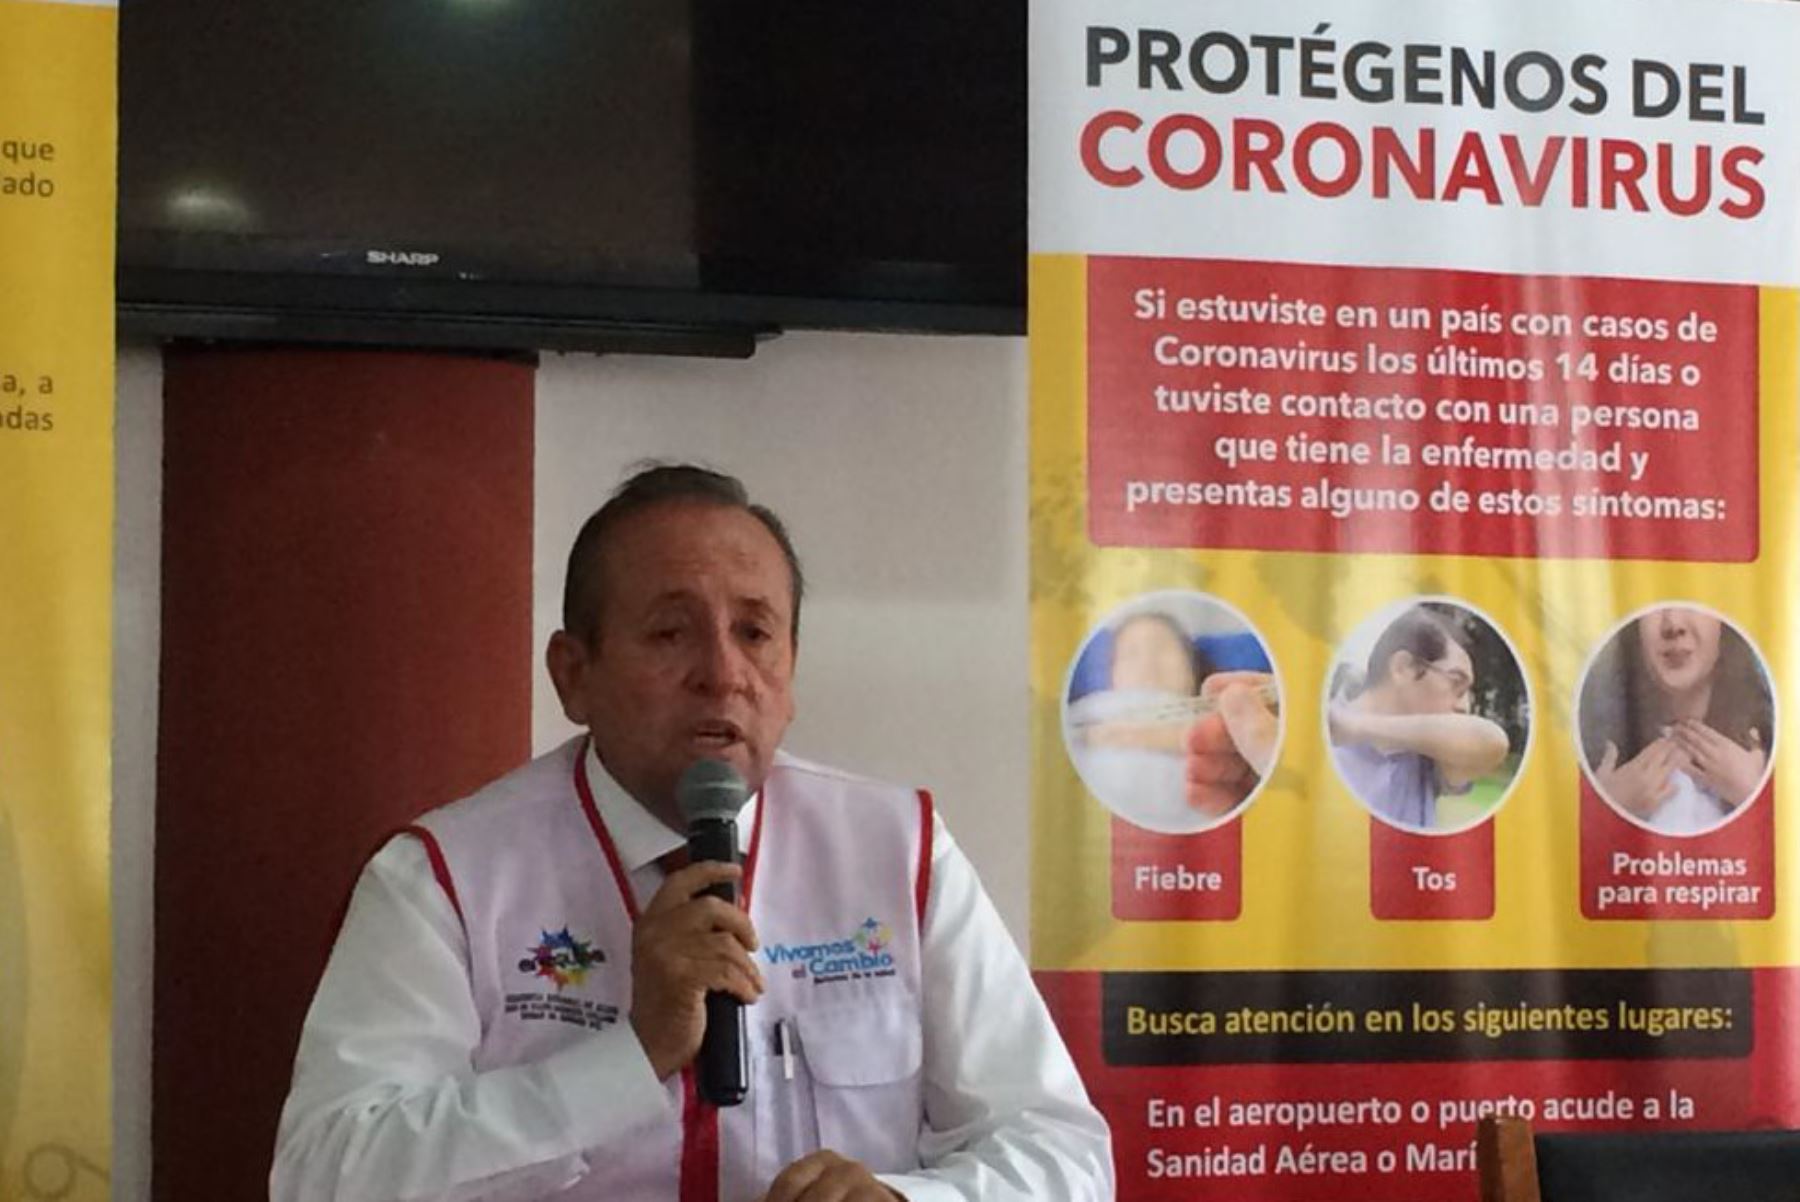 El gerente de Salud de Arequipa, Dember Muñoz, informó que los dos pacientes con coronavirus reciben atención médica domiciliaria. Foto: ANDINA/Difusión